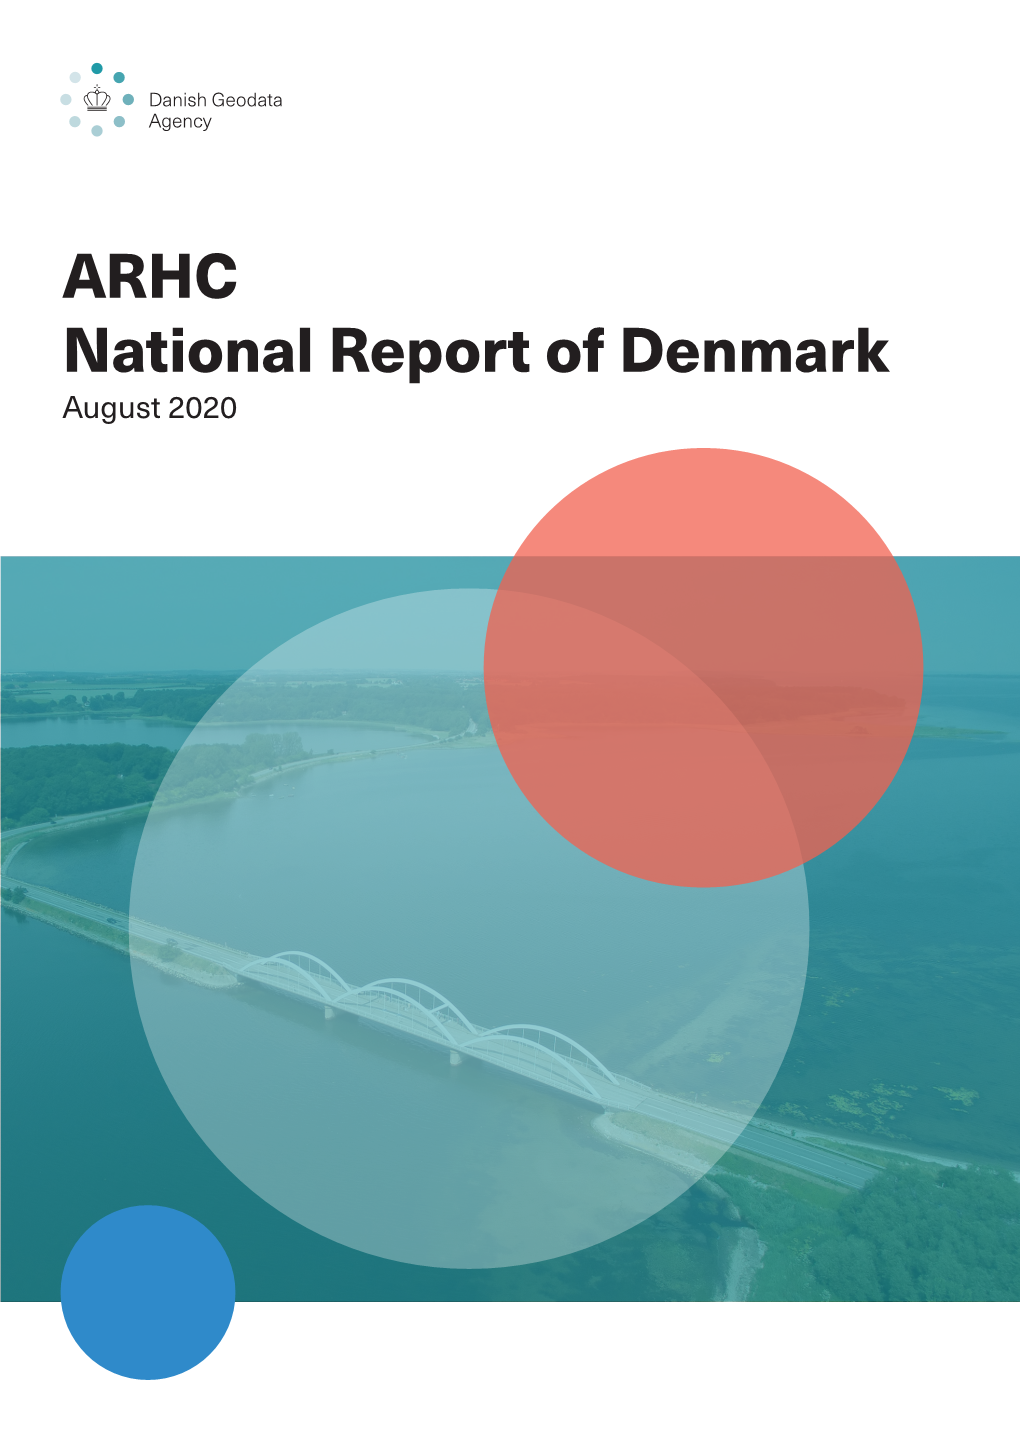 National Report Denmark